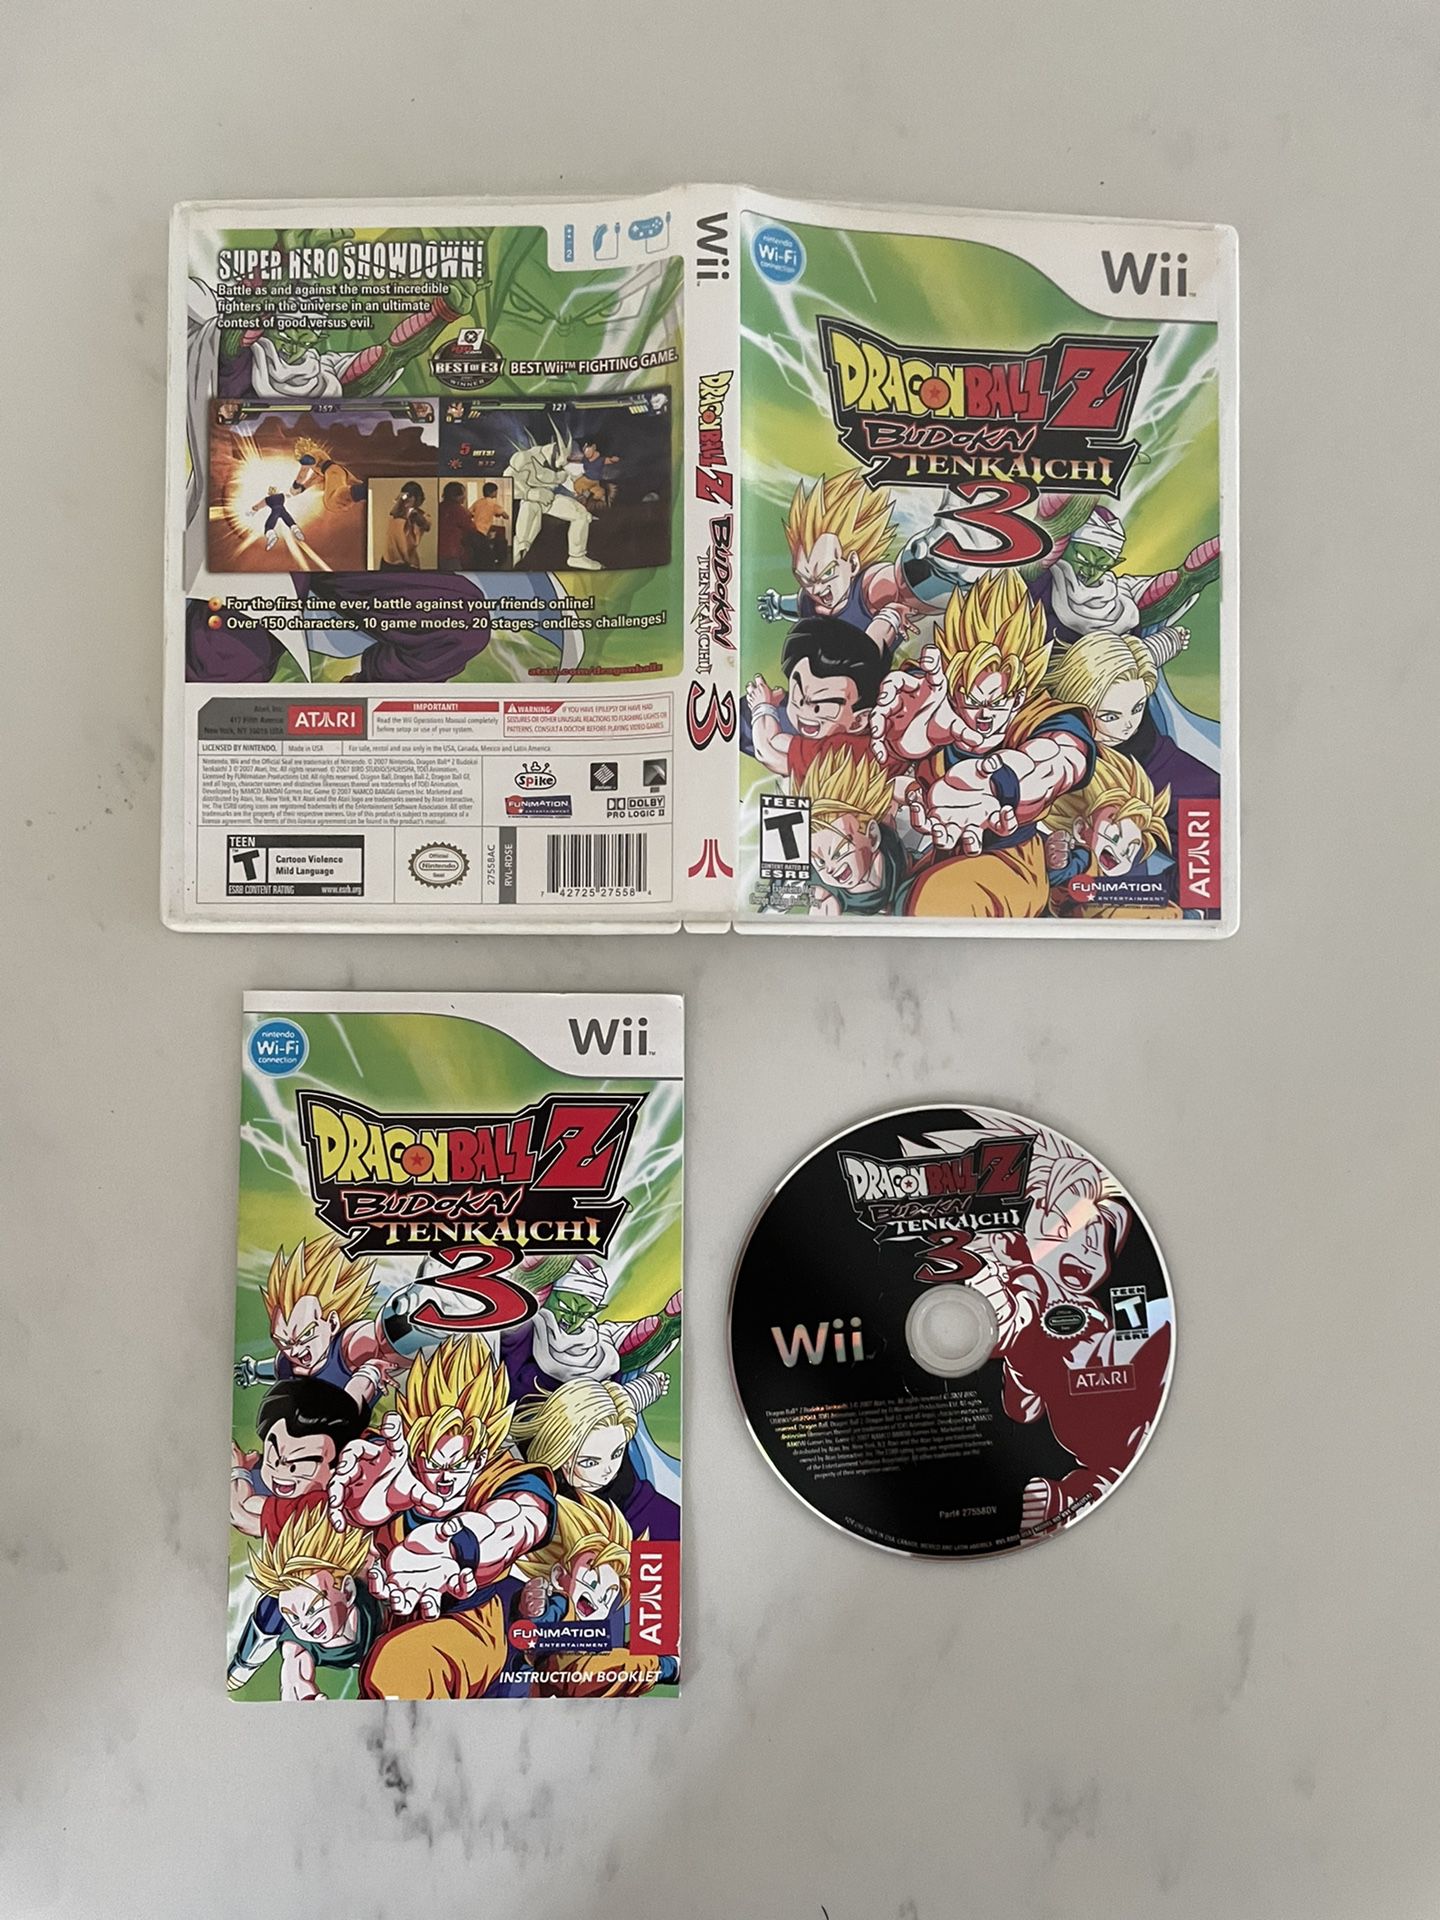 Dragon Ball Z - Budokai Tenkaichi 2 - Nintendo Wii(Wii ISOs) ROM